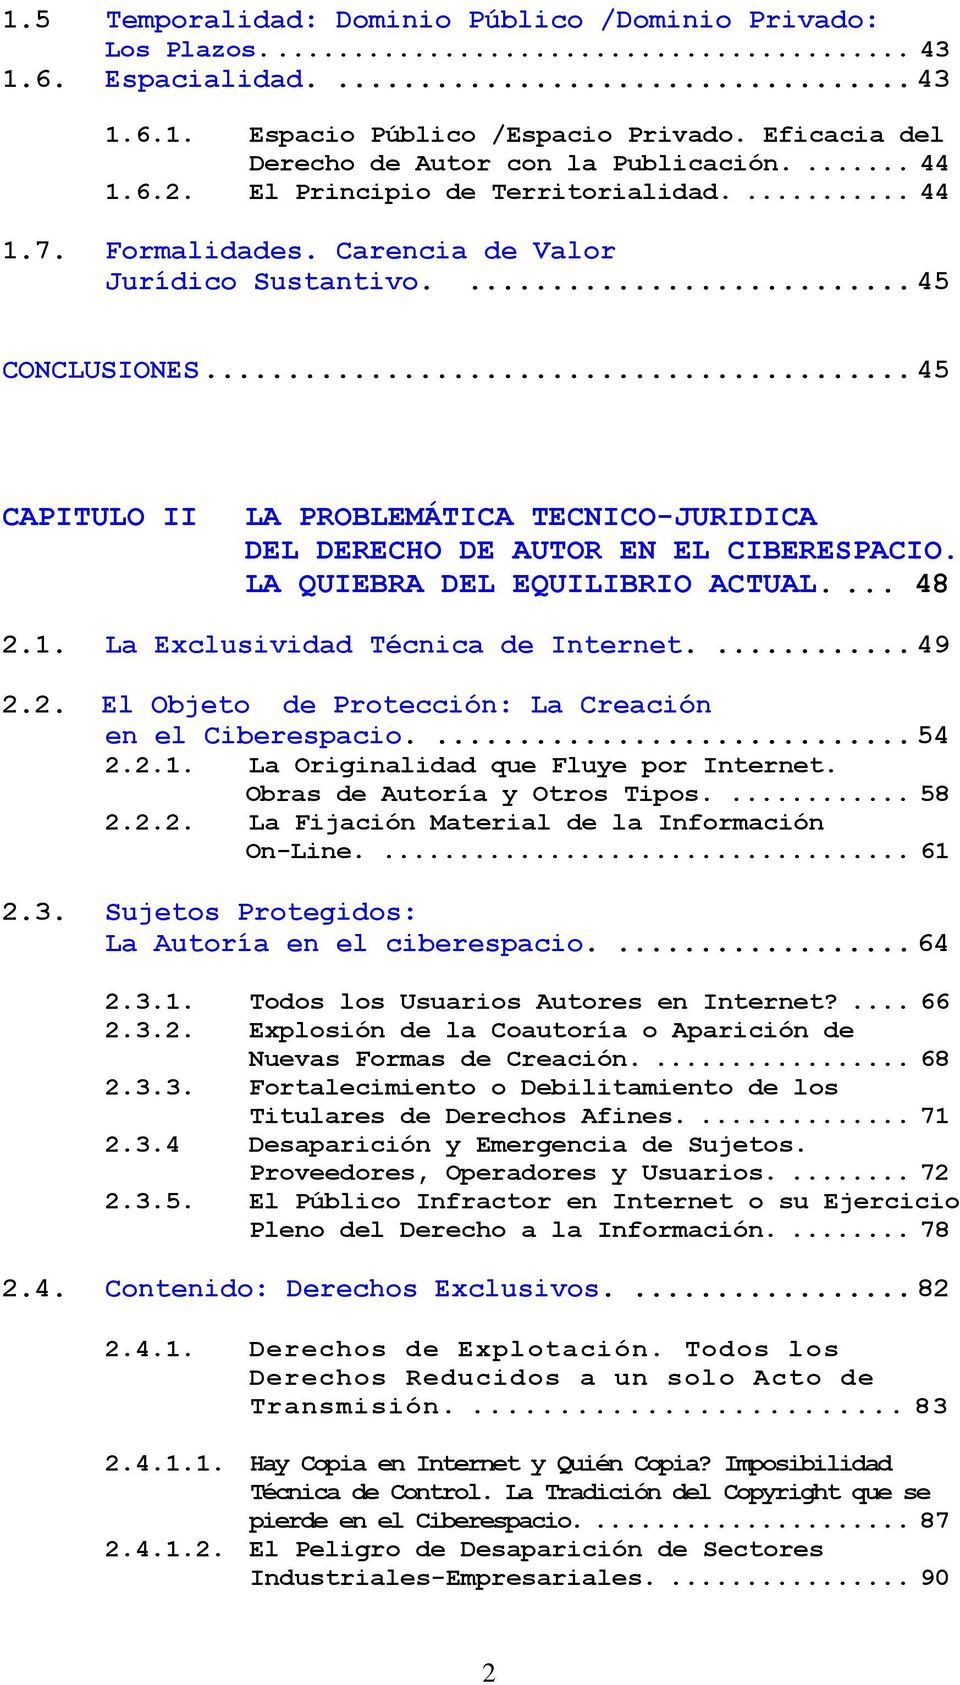 .. 45 CAPITULO II LA PROBLEMÁTICA TECNICO-JURIDICA DEL DERECHO DE AUTOR EN EL CIBERESPACIO. LA QUIEBRA DEL EQUILIBRIO ACTUAL.... 48 2.1. La Exclusividad Técnica de Internet.... 49 2.2. El Objeto de Protección: La Creación en el Ciberespacio.